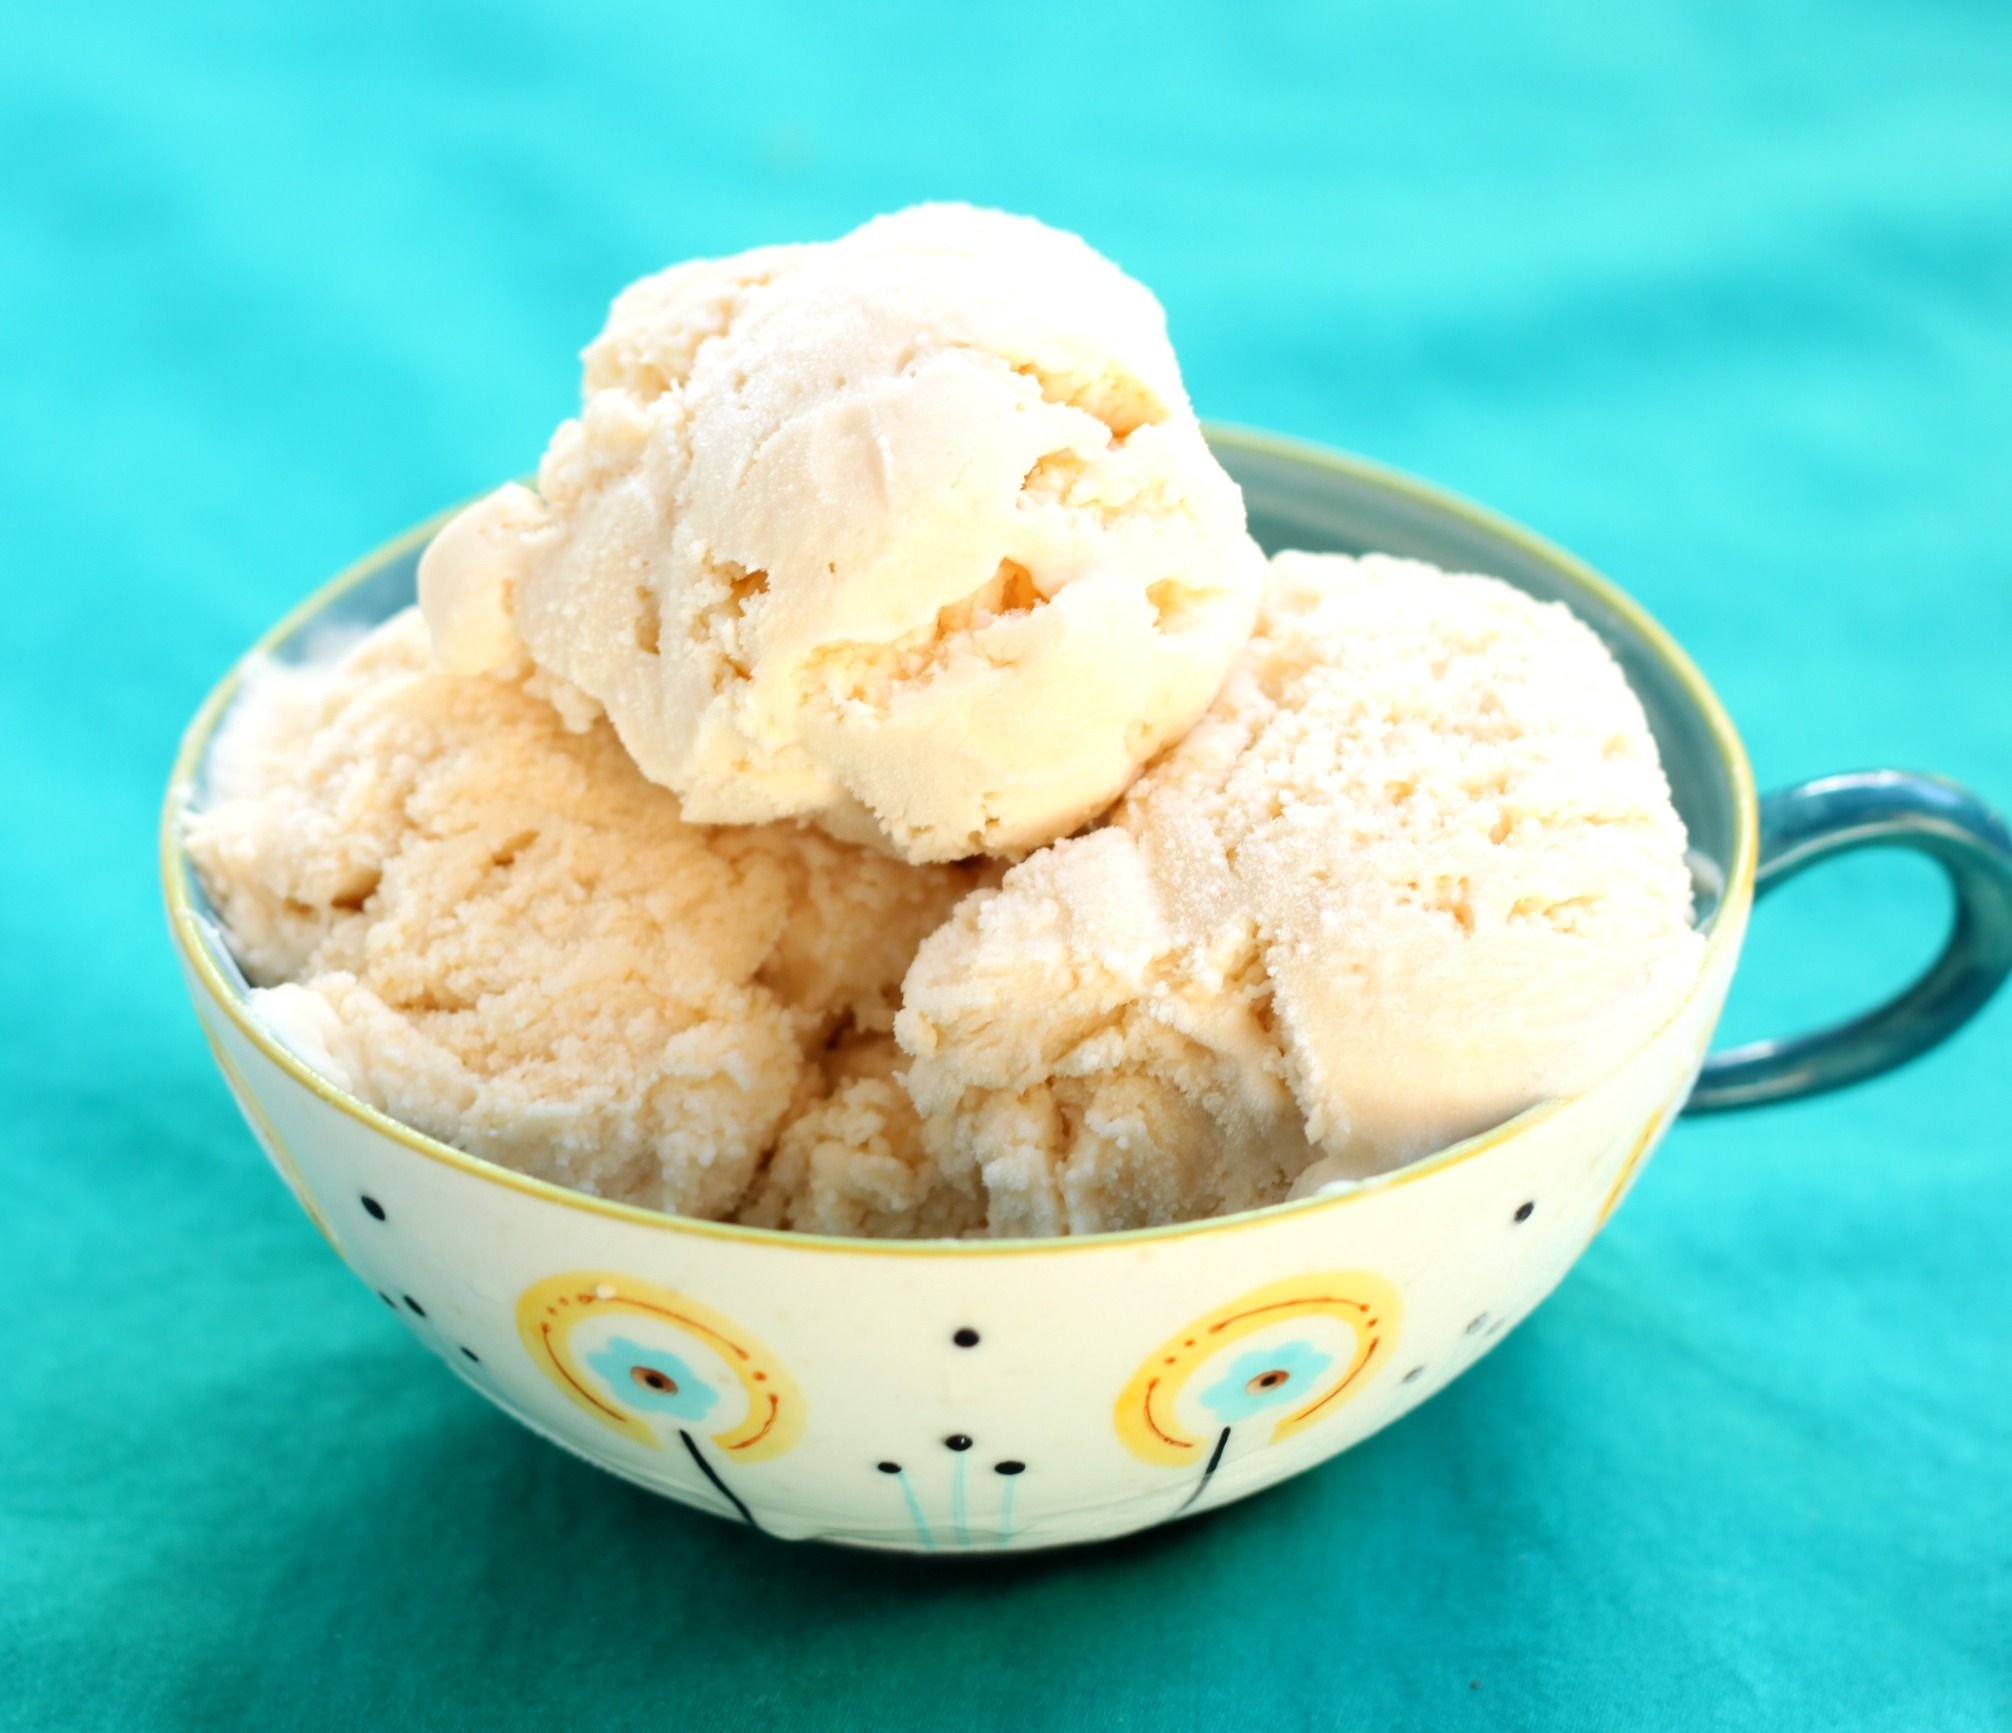 Домашнее мороженое пошаговый рецепт